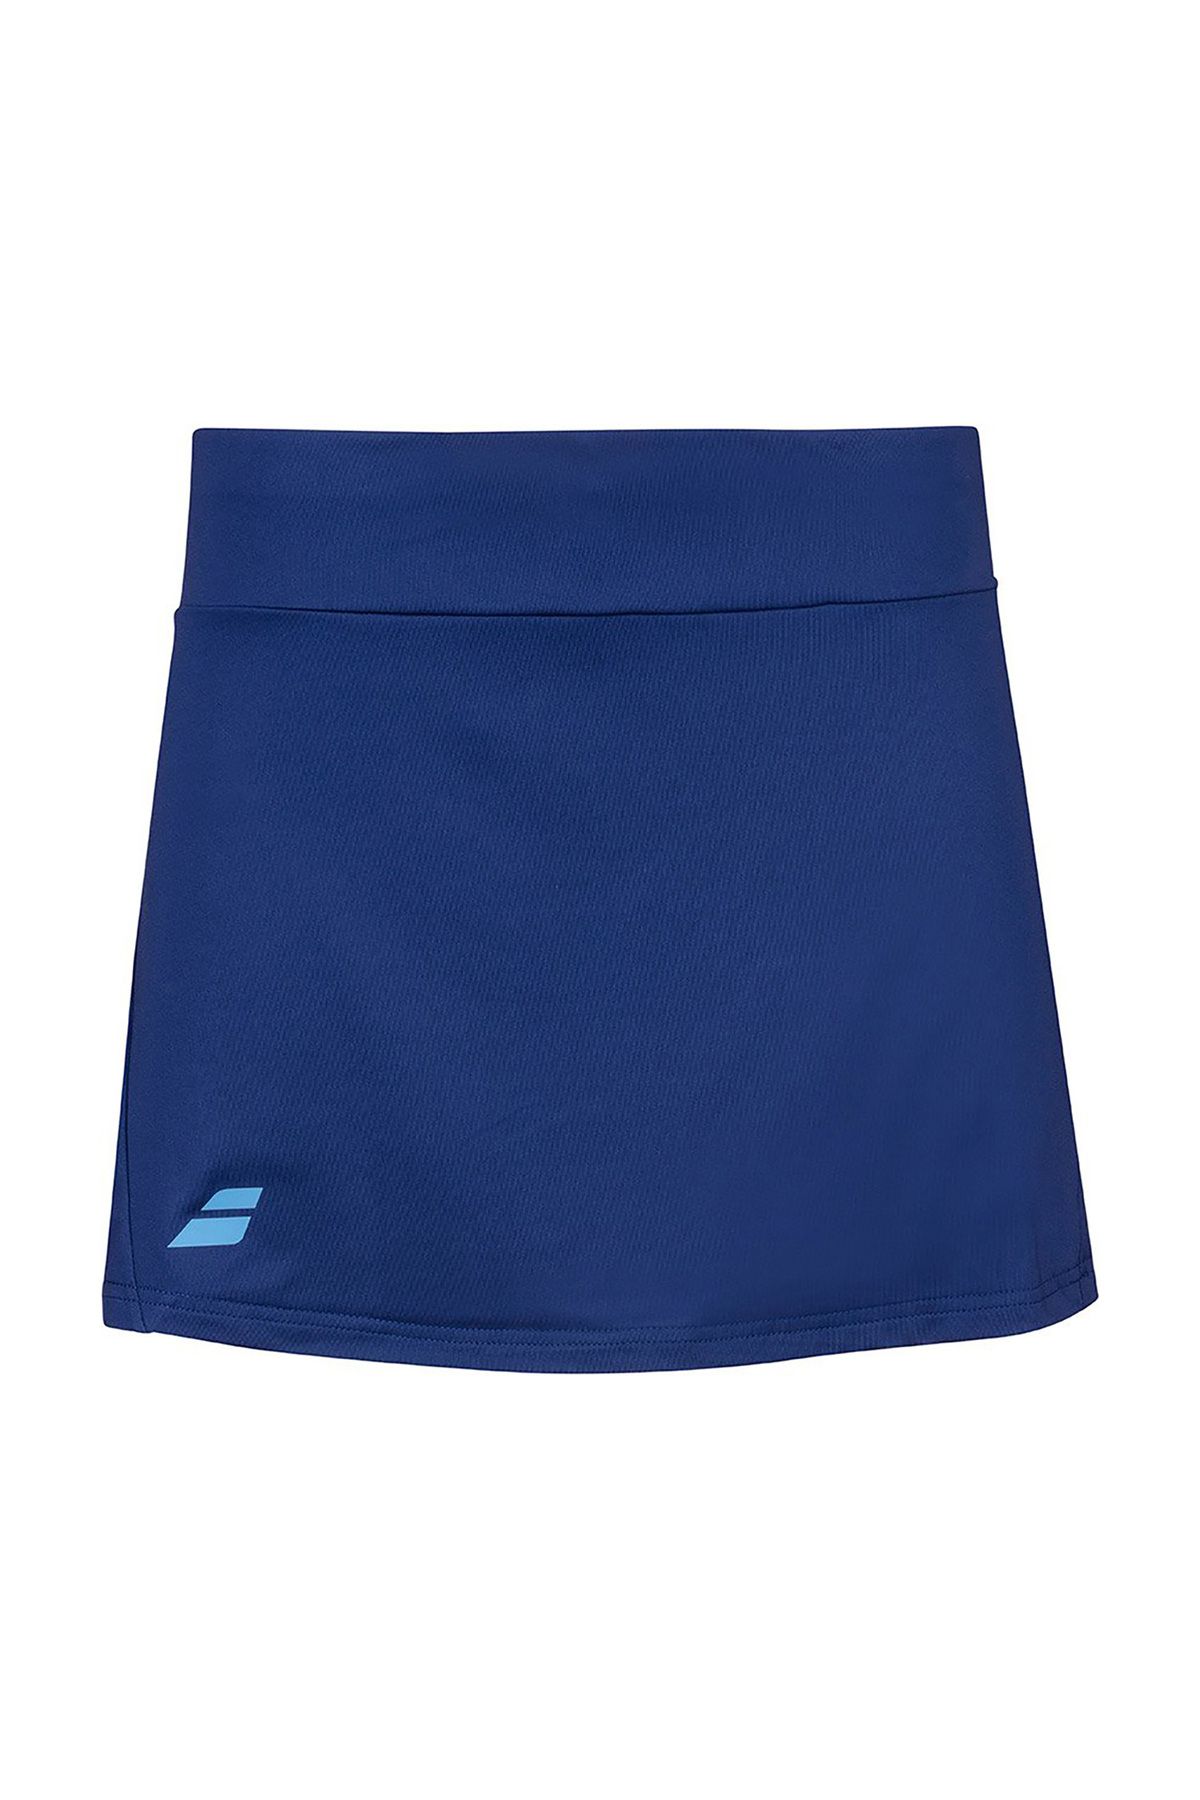 BABOLAT Play Skirt Kadın Tenis Eteği